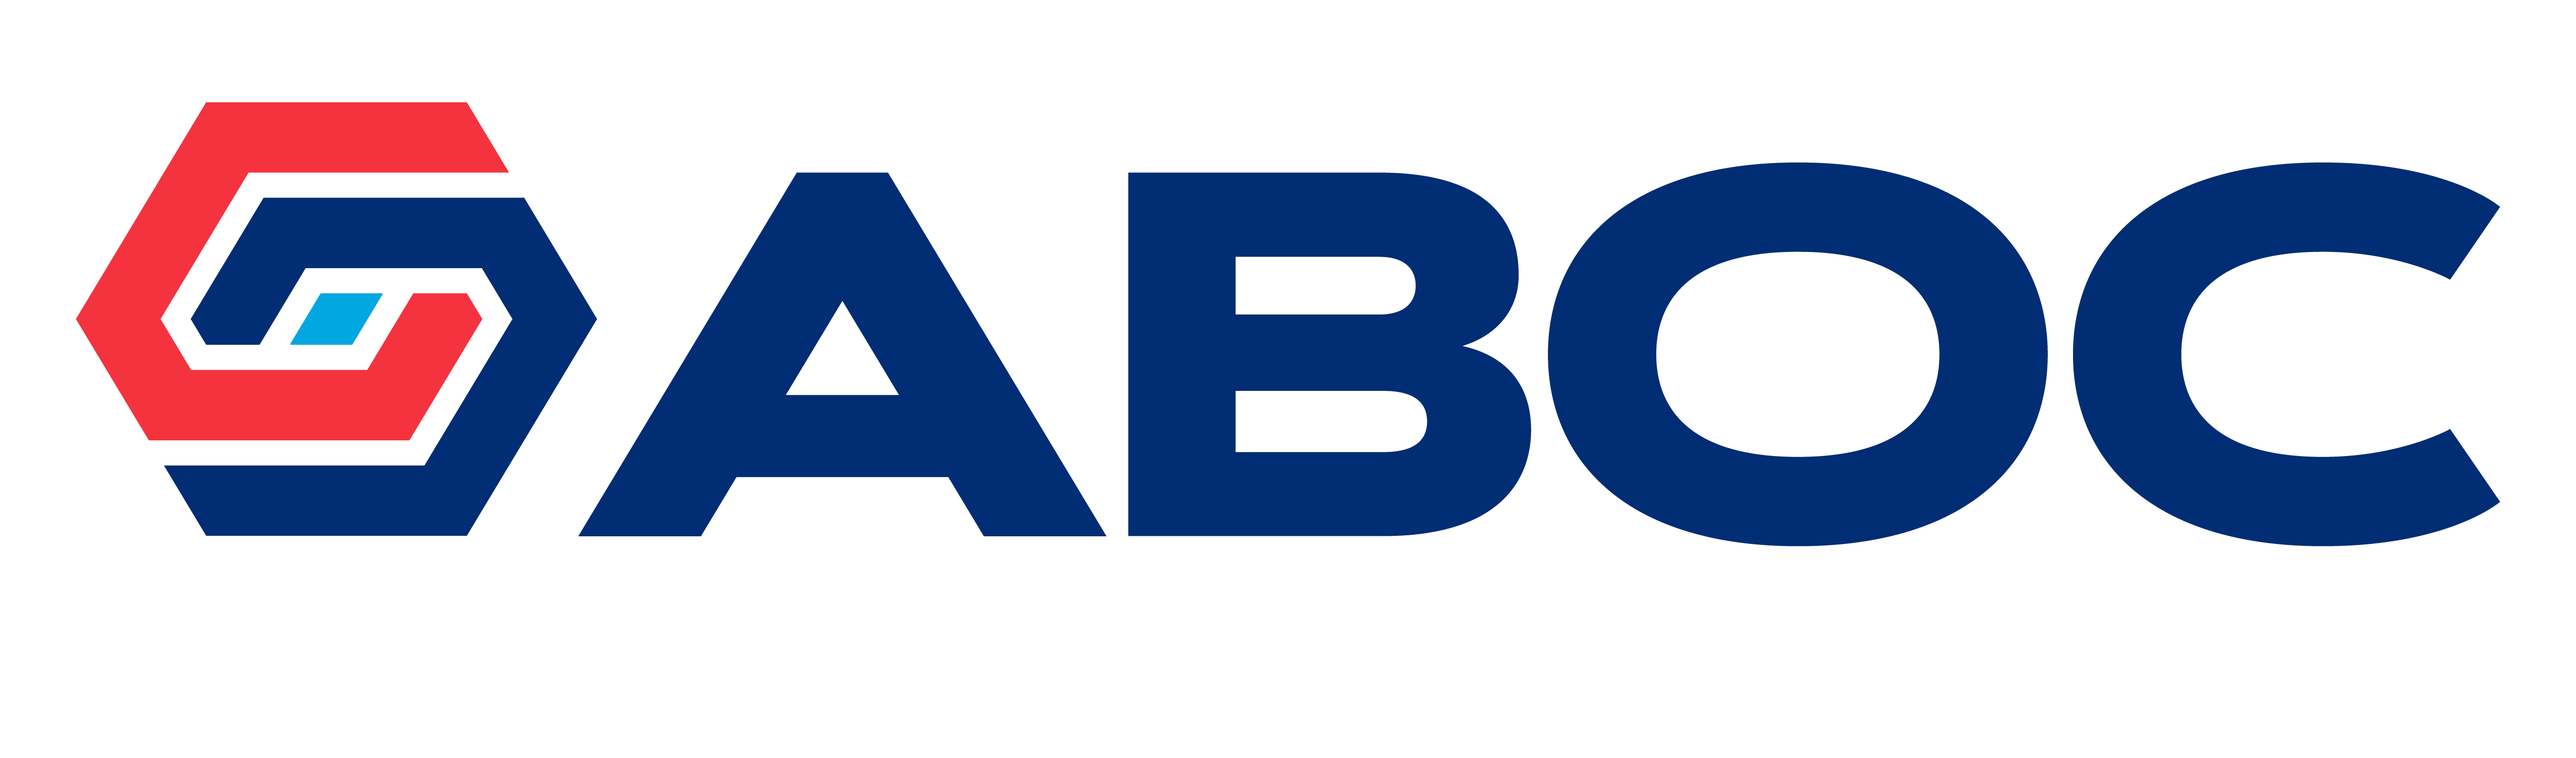 Amalgamated Bank of Chicago Logo - Mobile